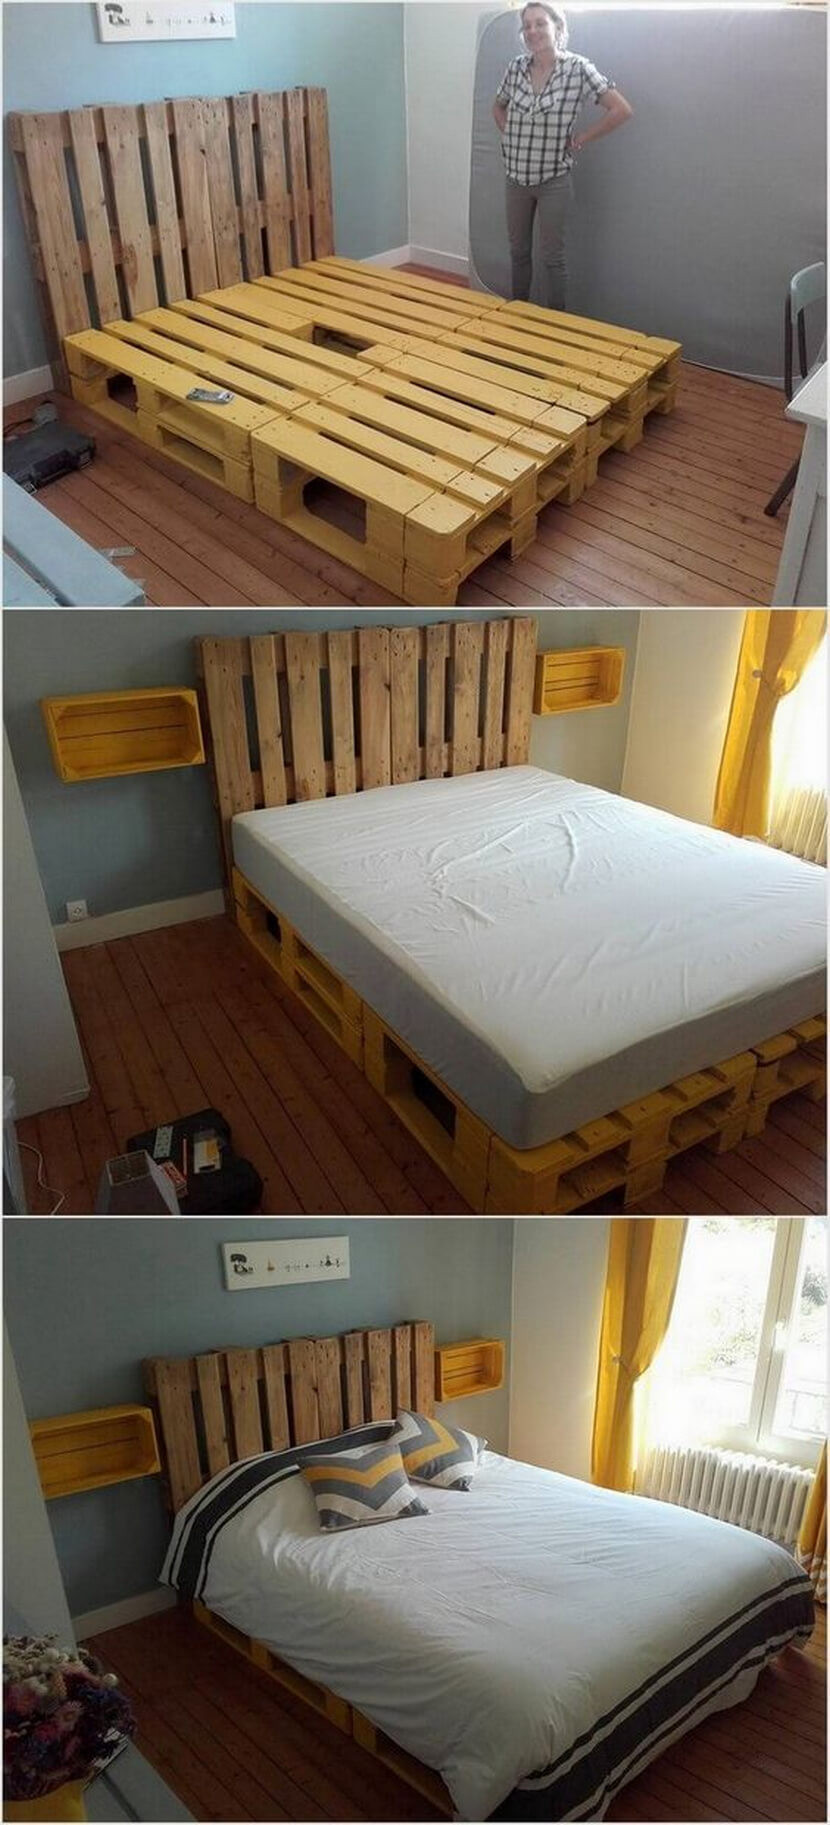 DIY Wooden Pallet Bed
 100 DIY Ideas For Wood Pallet Beds